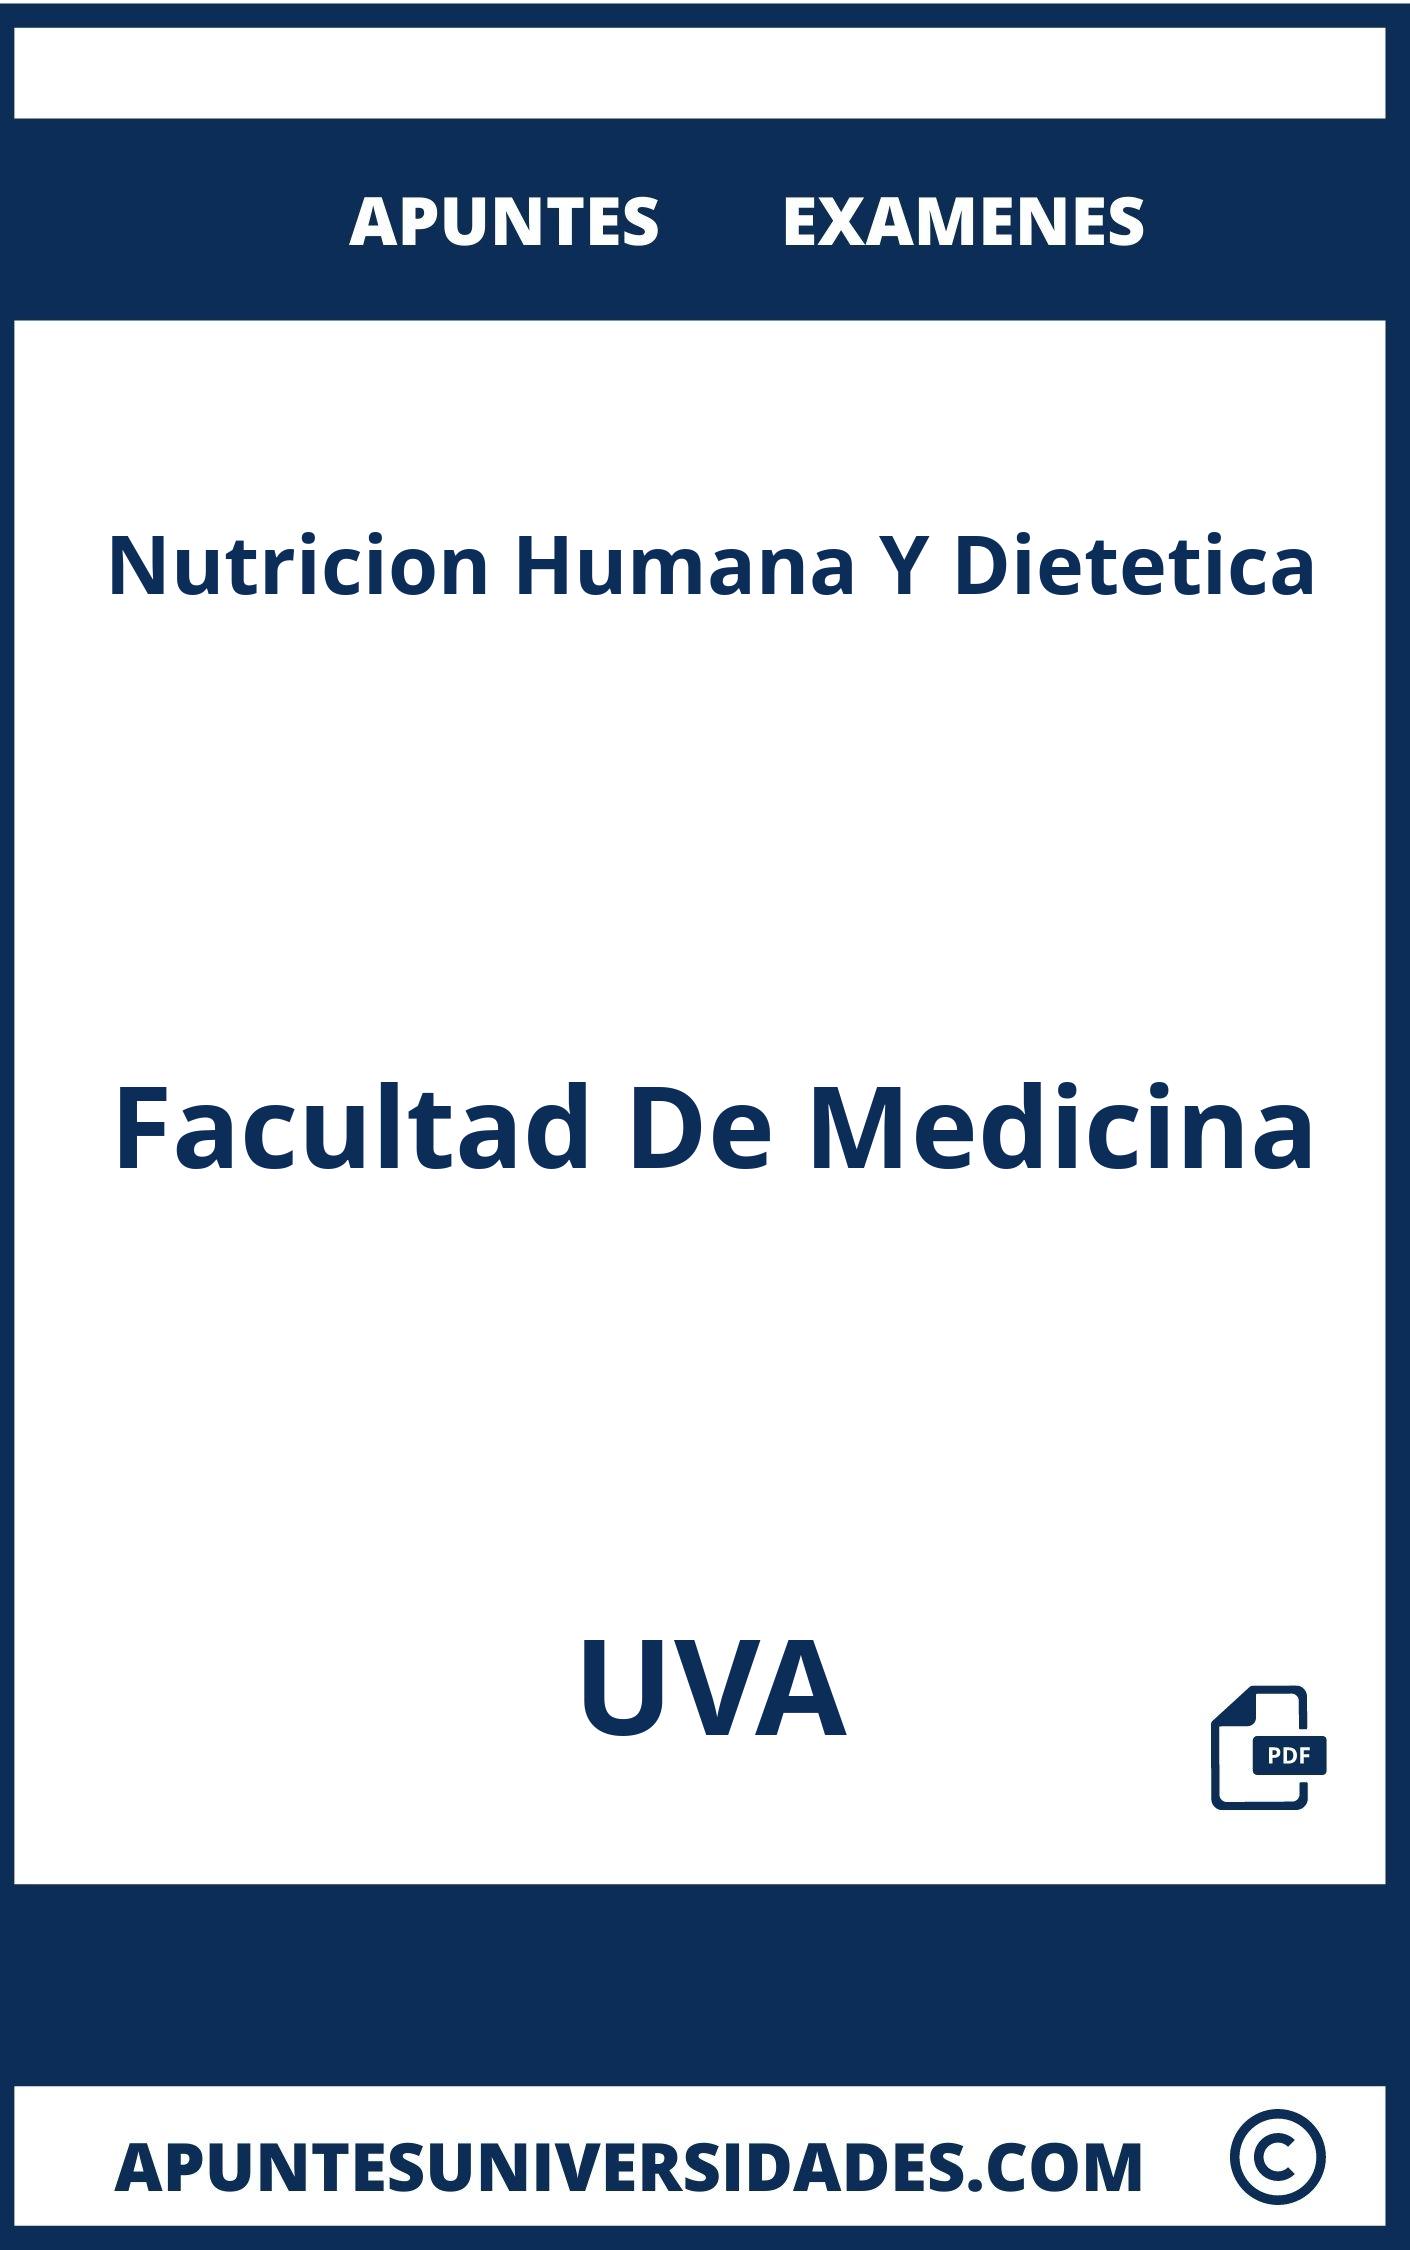 Apuntes Nutricion Humana Y Dietetica UVA y Examenes